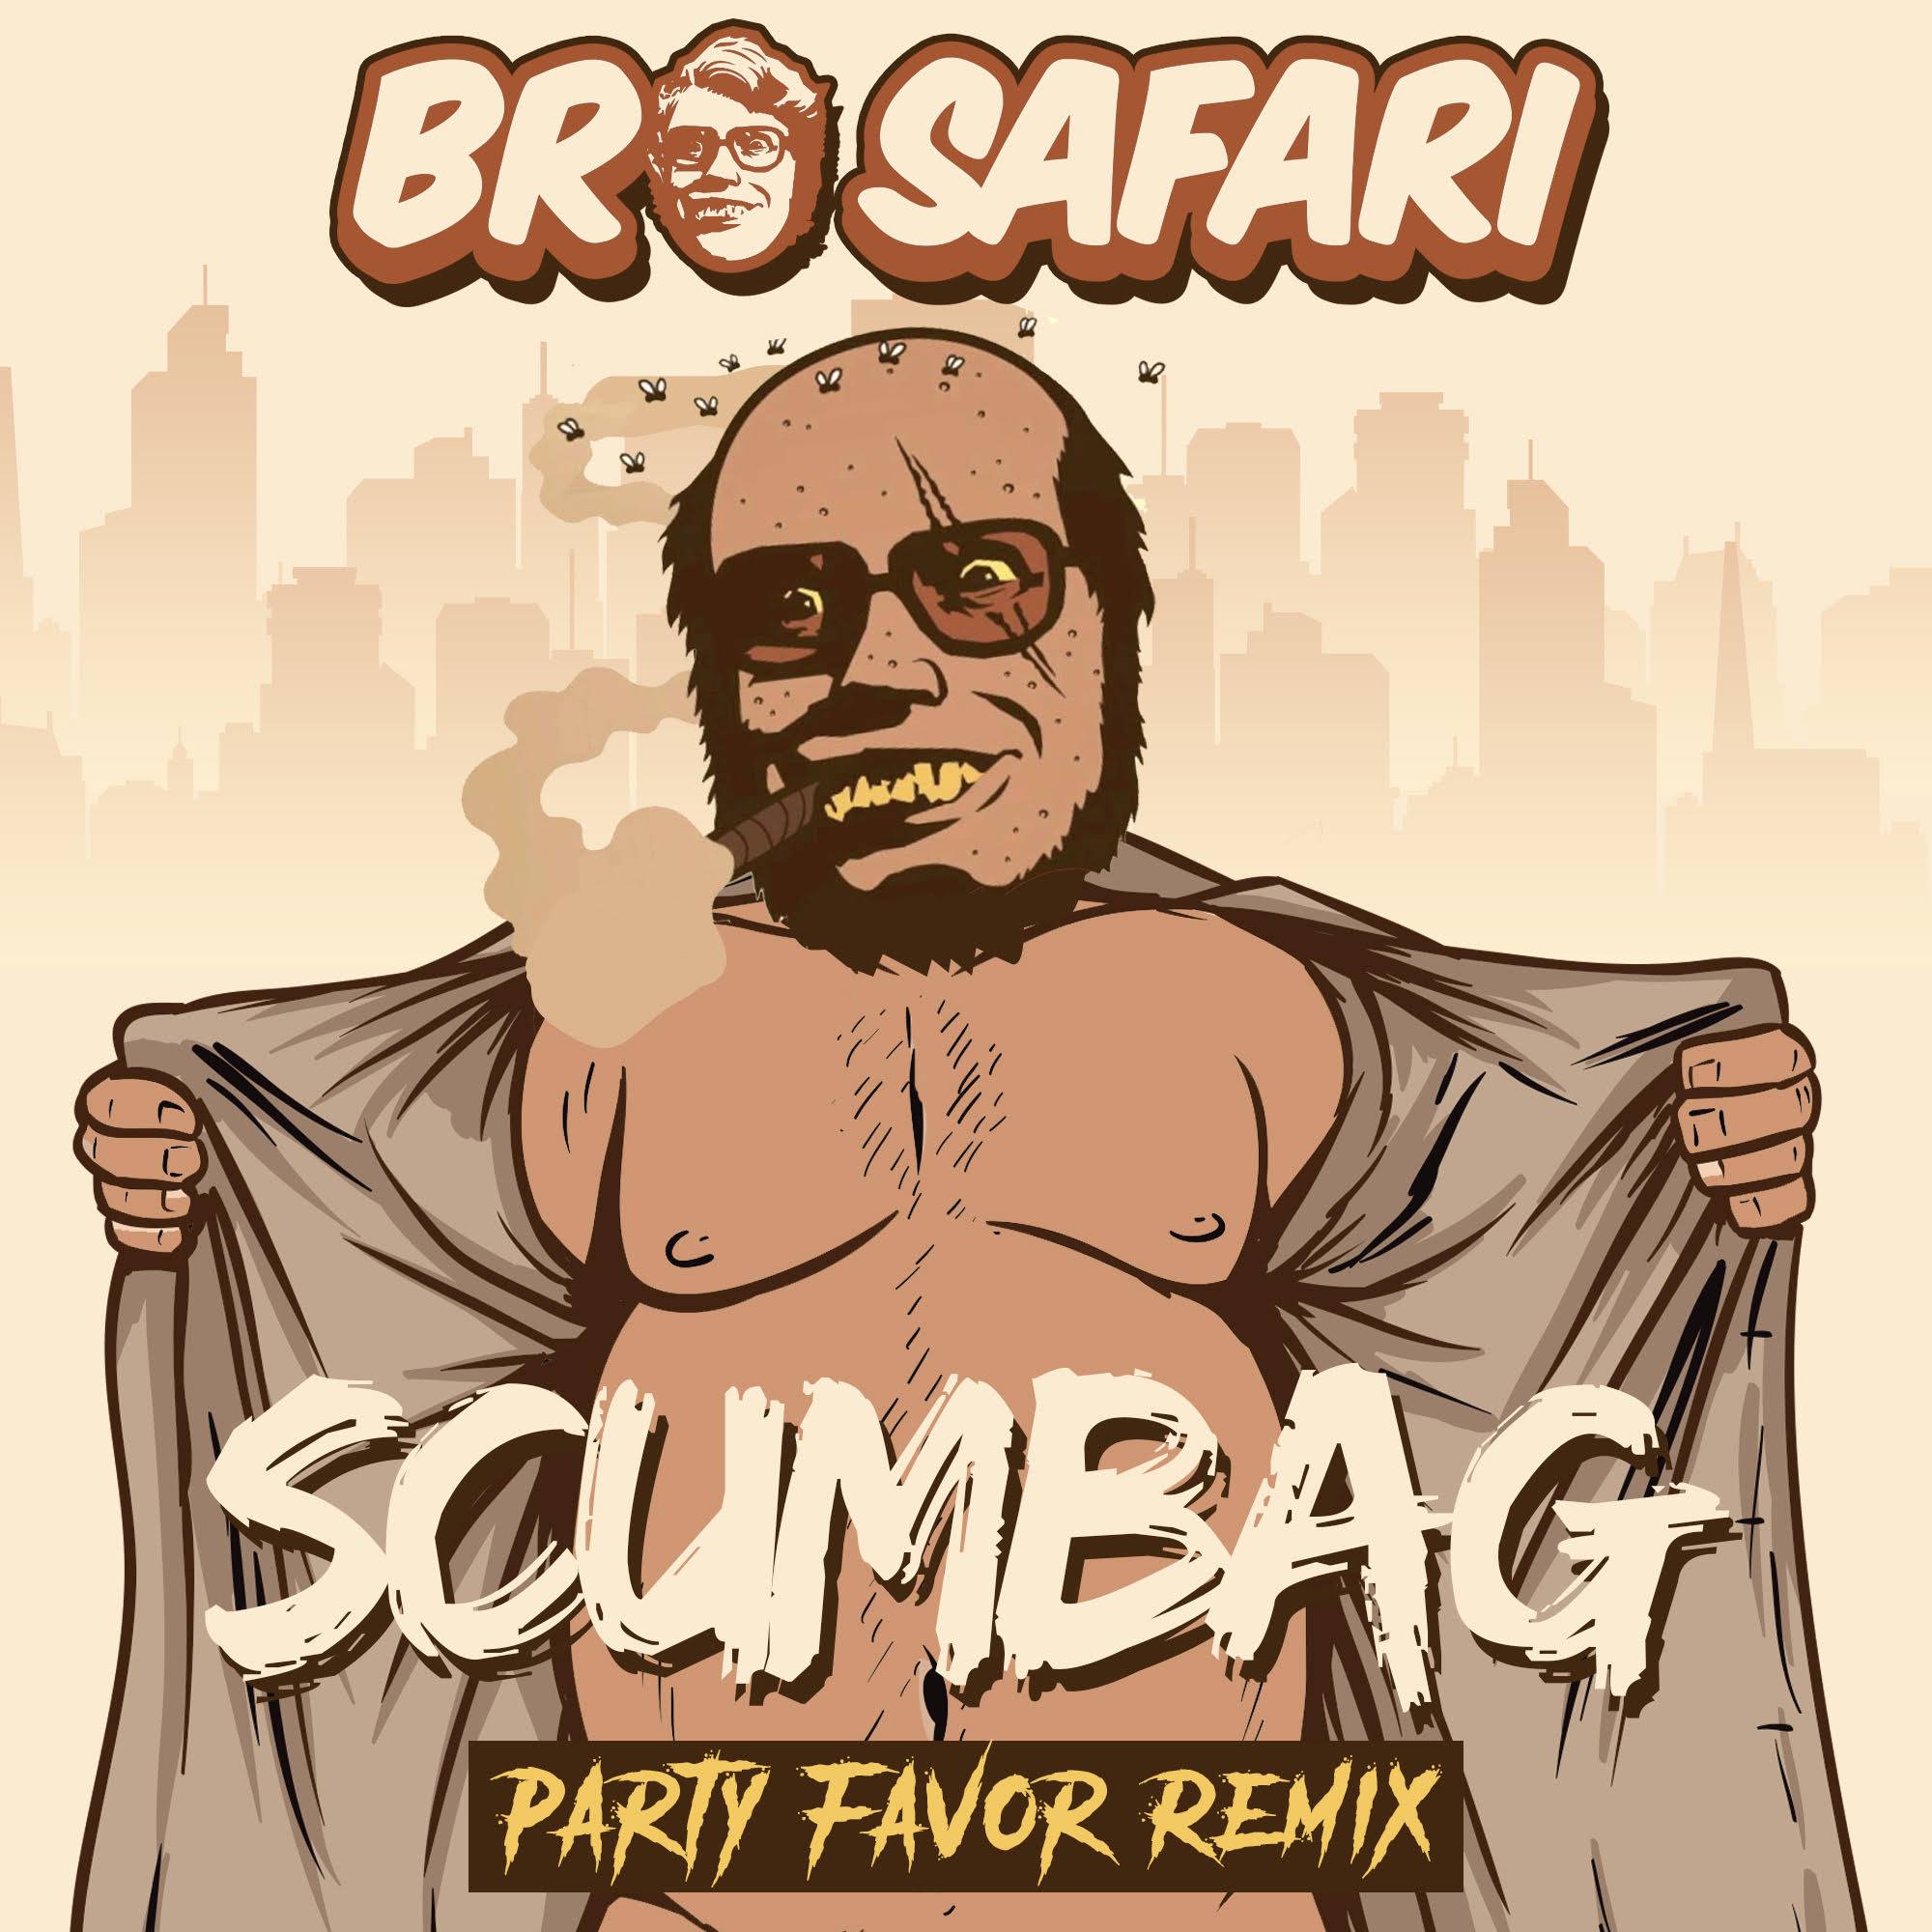 Party Favor Drops Sick Remix Of Bro Safari Classic